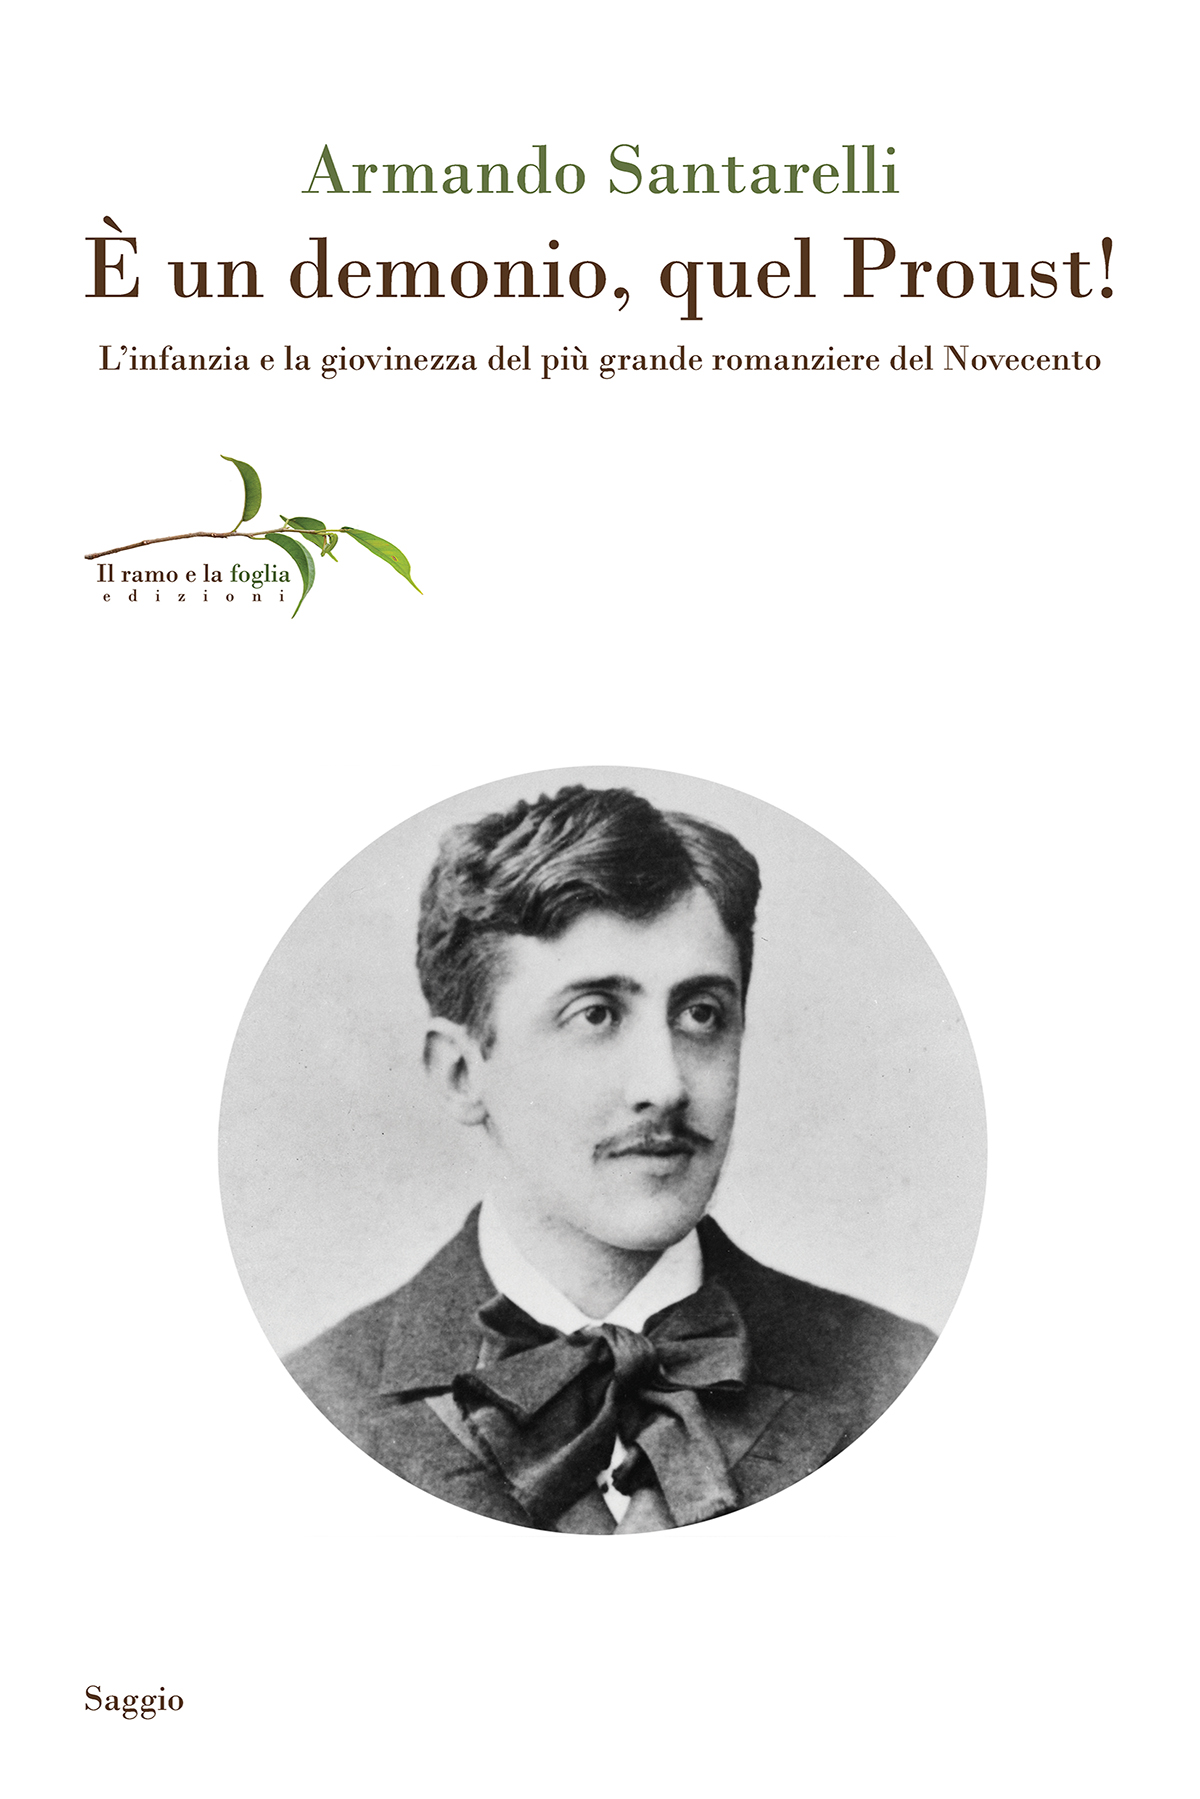 Copertina: Marcel Proust a ventuno anni (1892) fotografia di Paul Nadar, da Wikimedia Commons